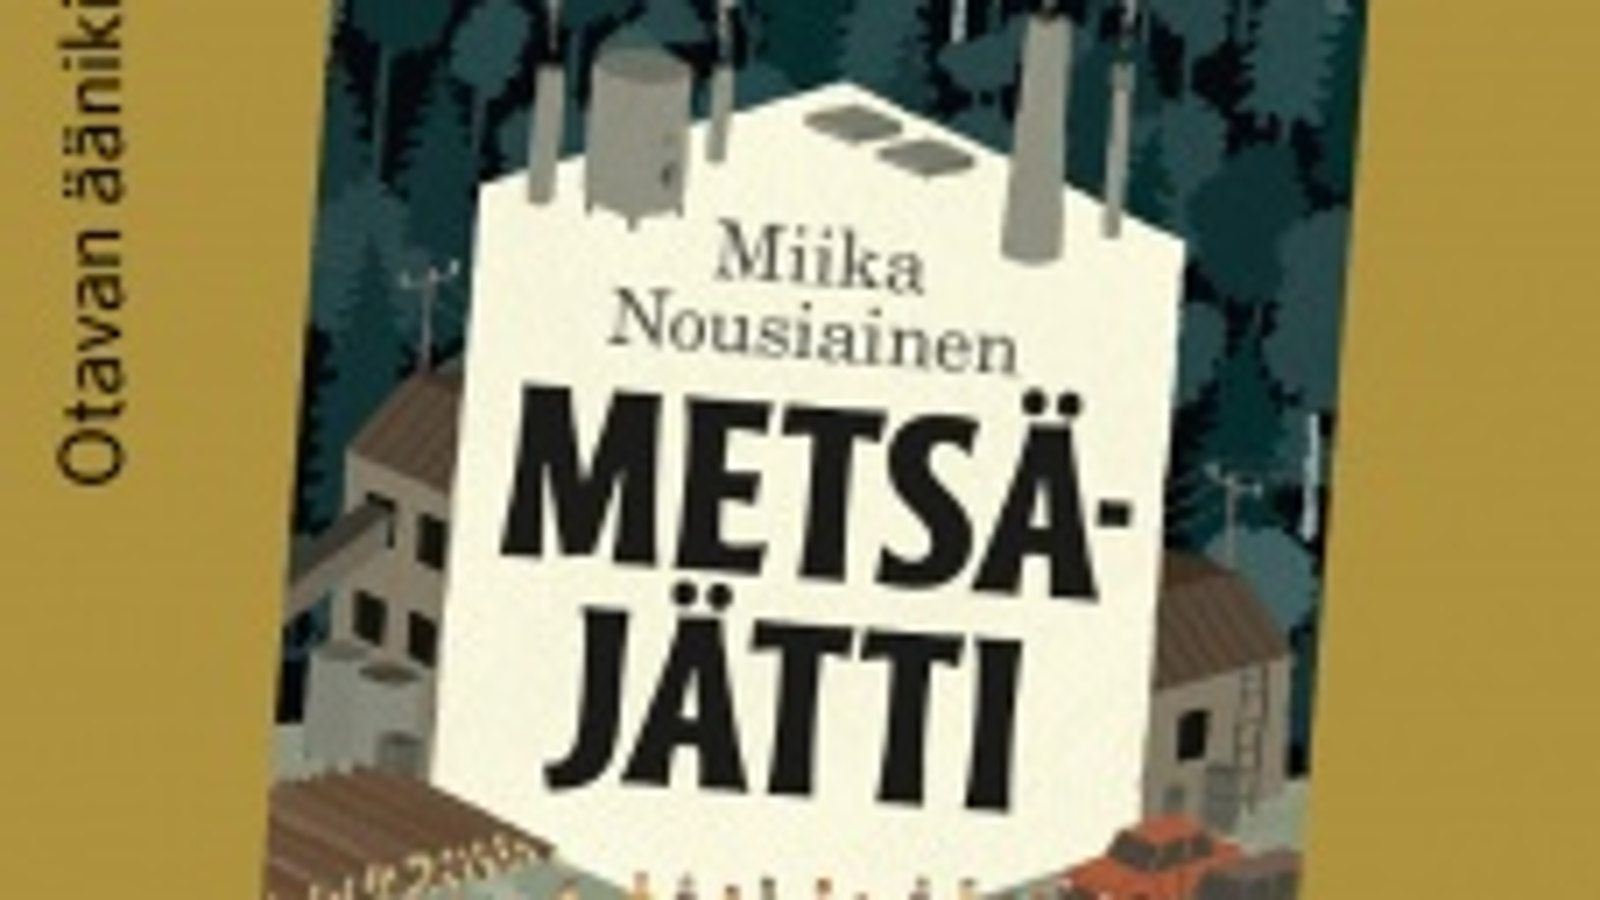 Kuvassa on osa Metsäjätti -kirjan kannesta.  Kuvan keskellä on Miika Nousiaisen nimi ja kirjan nimi Metsäjätti. Nimet ovat vaalean ruskehtavalla pohjalla.  Taustalla näkyy tehdasrakennusta.  Reunoissa on vihertävää väriä.